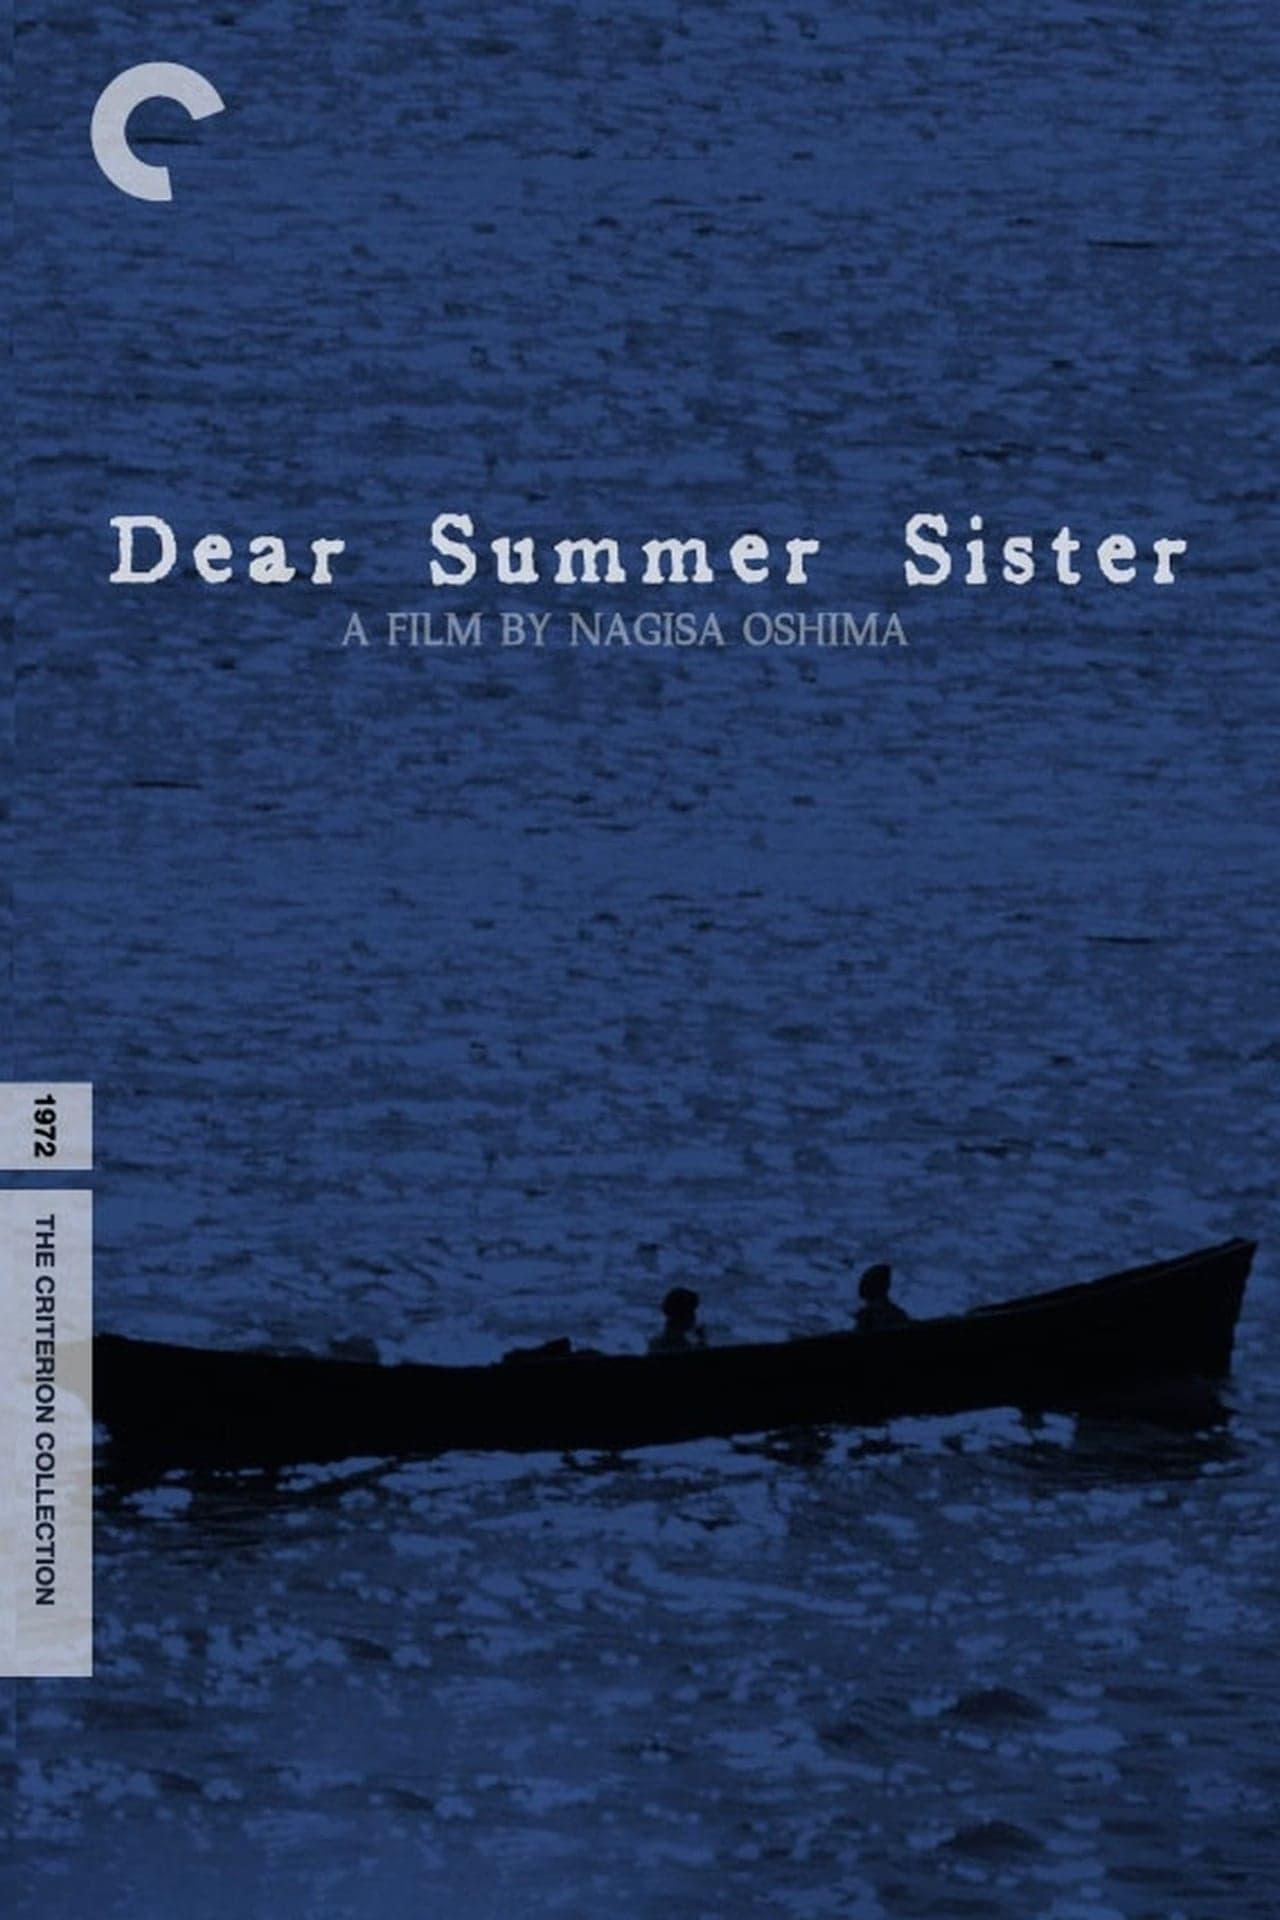 Dear Summer Sister poster